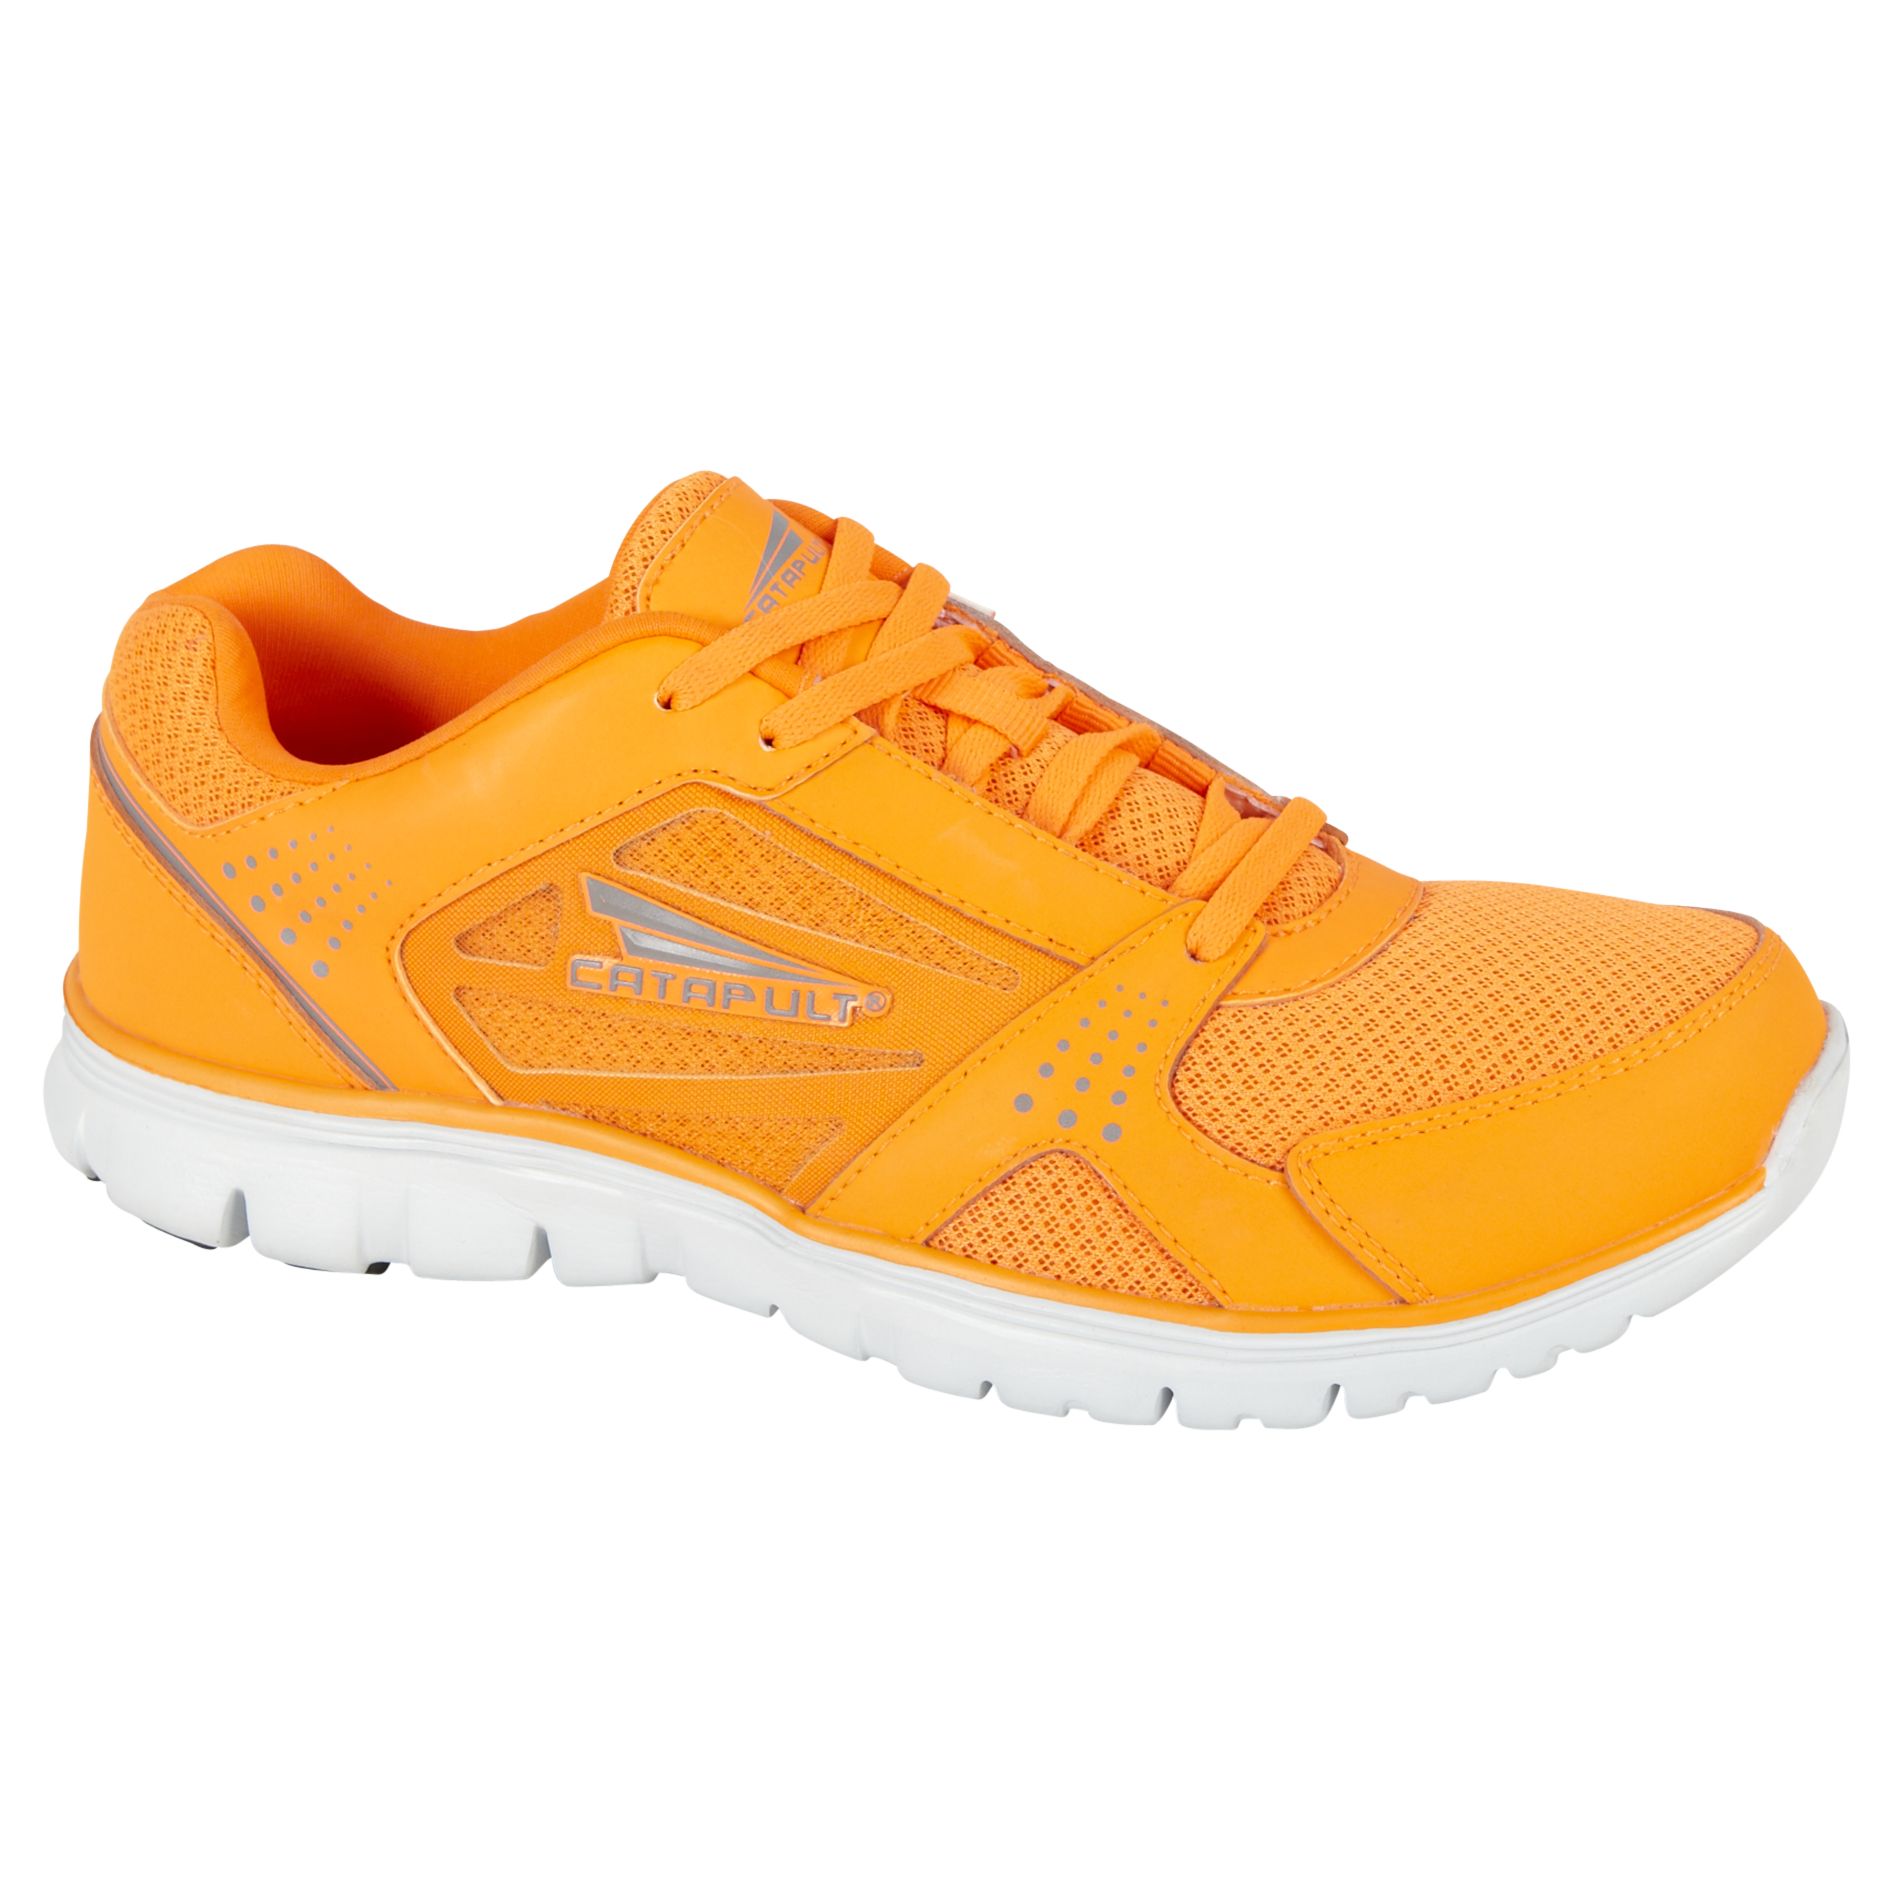 CATAPULT Men's Athletic Shoe Meteor Medium and Wide Width - Orange